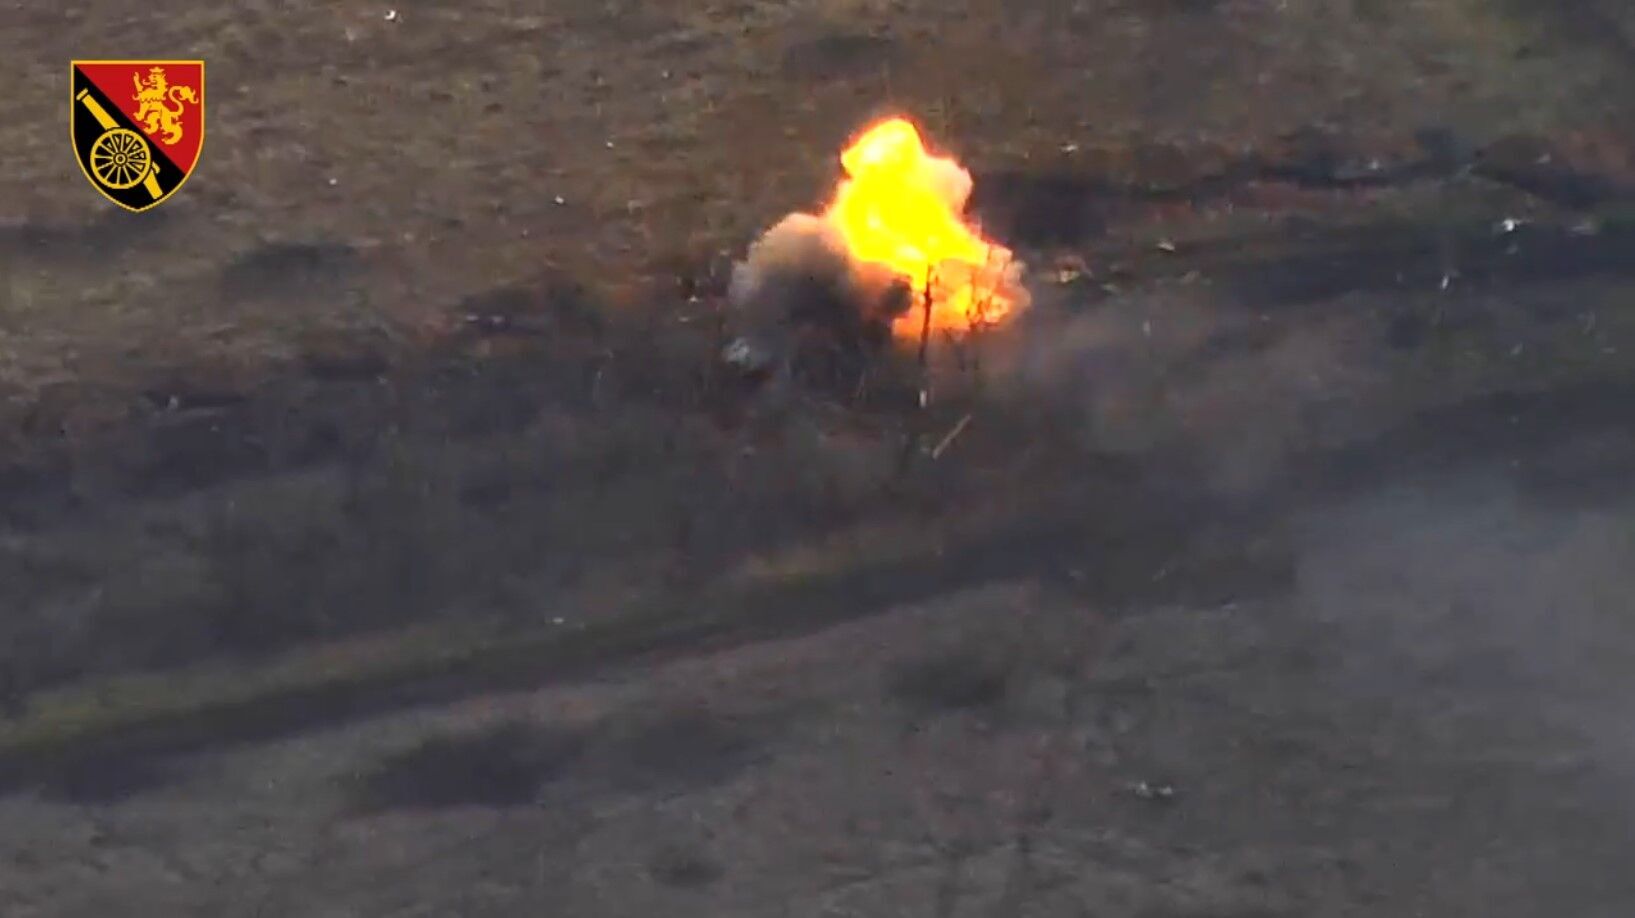 "Видим врага как на ладони": украинские артиллеристы уничтожили БМП и полевой склад БК захватчиков под Бахмутом. Видео